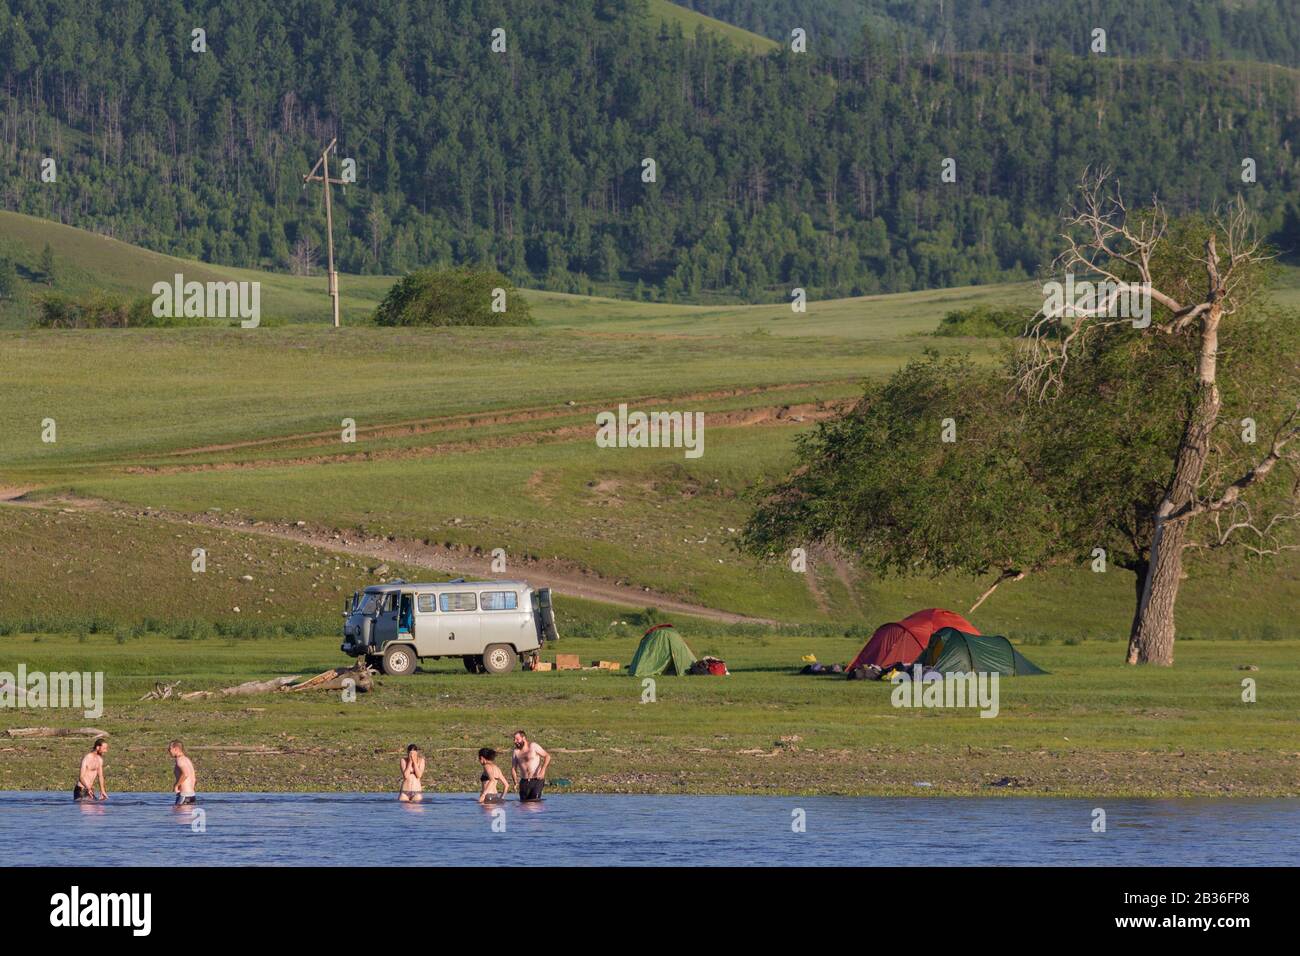 Mongolie, province de Bulgan, près de Namnang, UAZ 452 minibus et groupe de touristes occidentaux campant et se baigner dans la rivière Selenga Banque D'Images